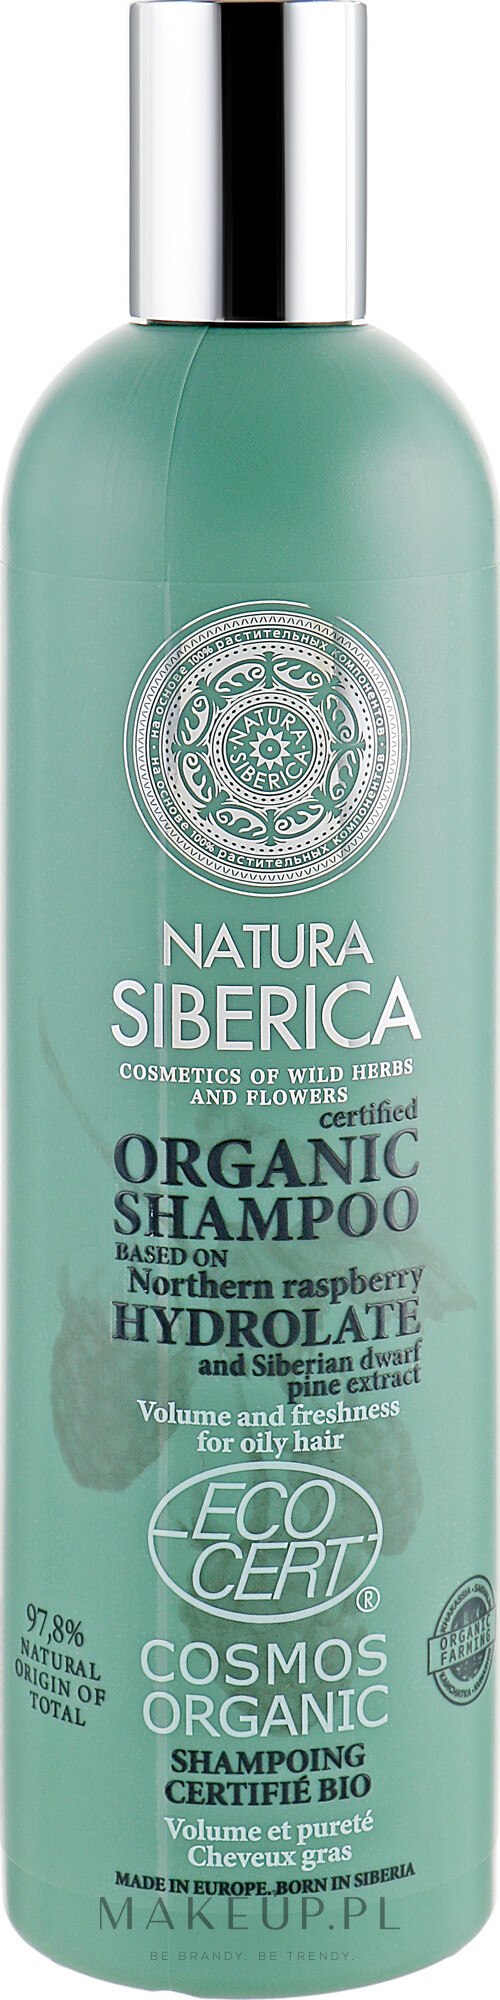 szampon organiczny